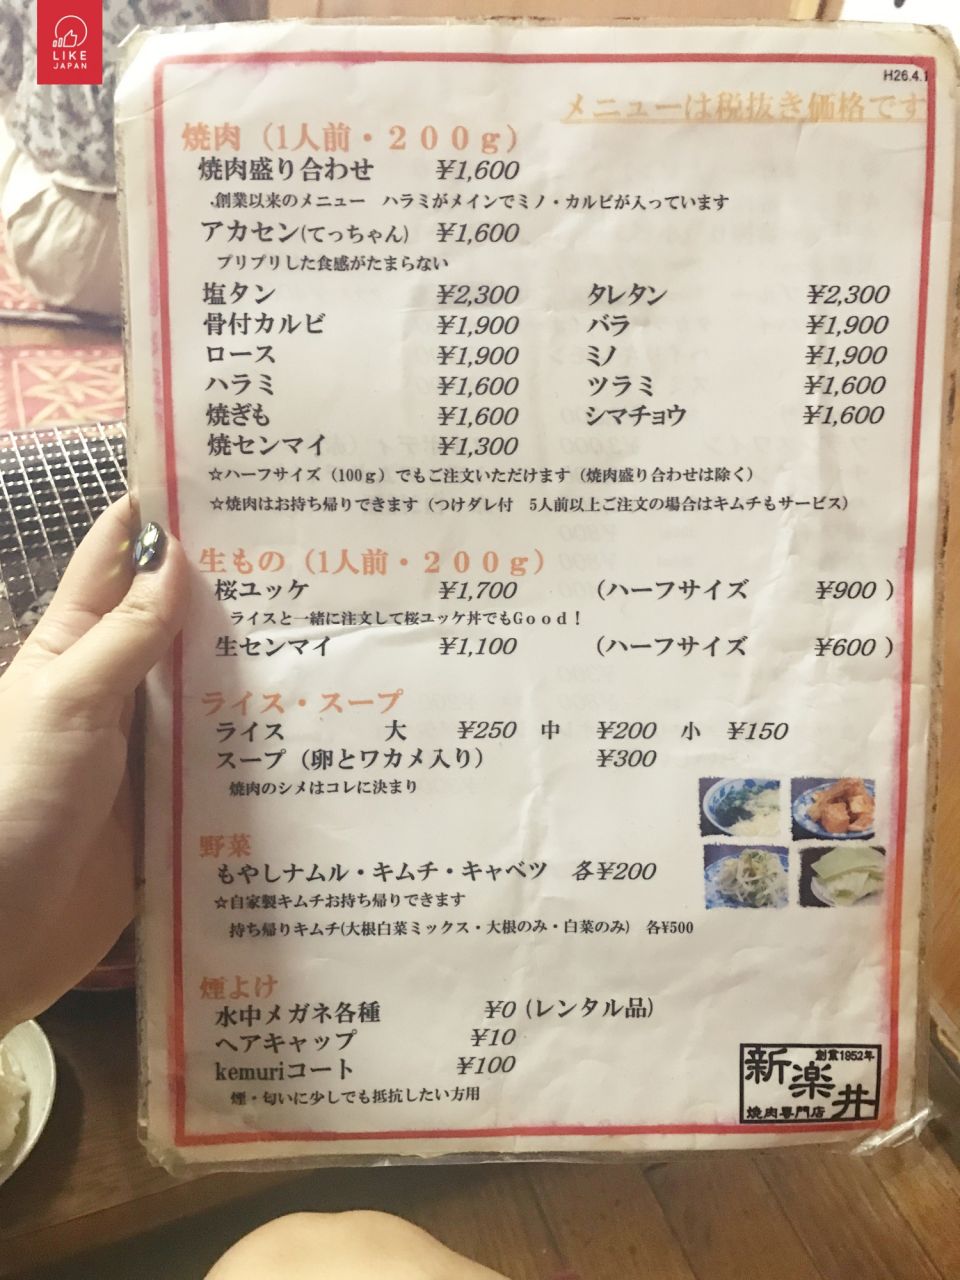 [自遊大阪] 鶴橋燒肉橫町 必食傳統燒肉店 新樂井 大阪自由行